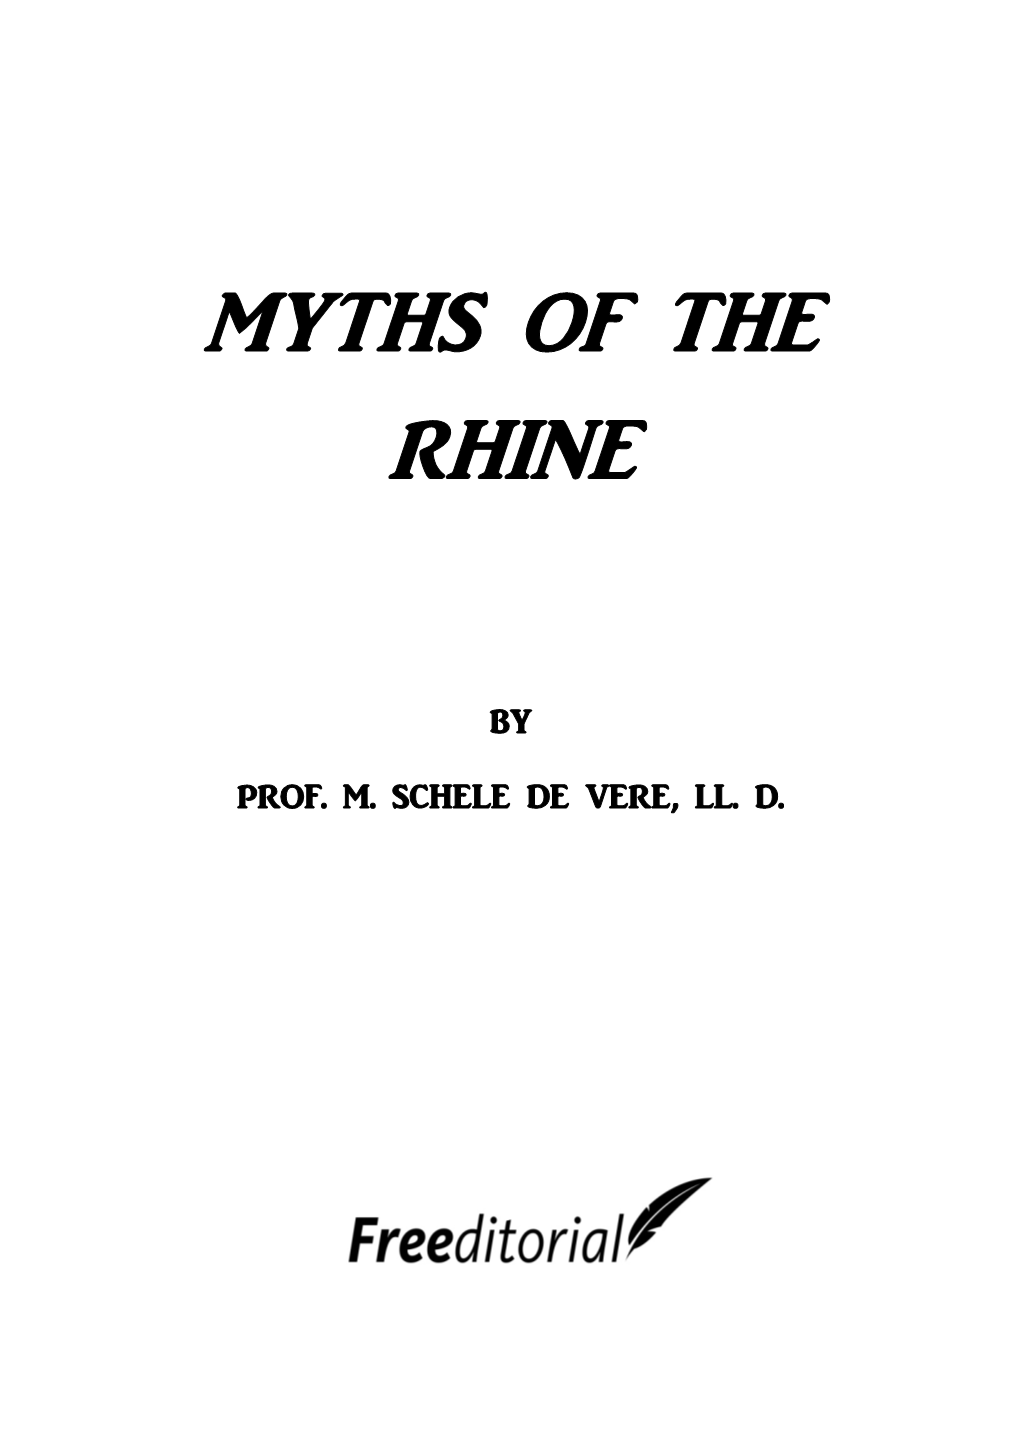 Myths of the Rhine